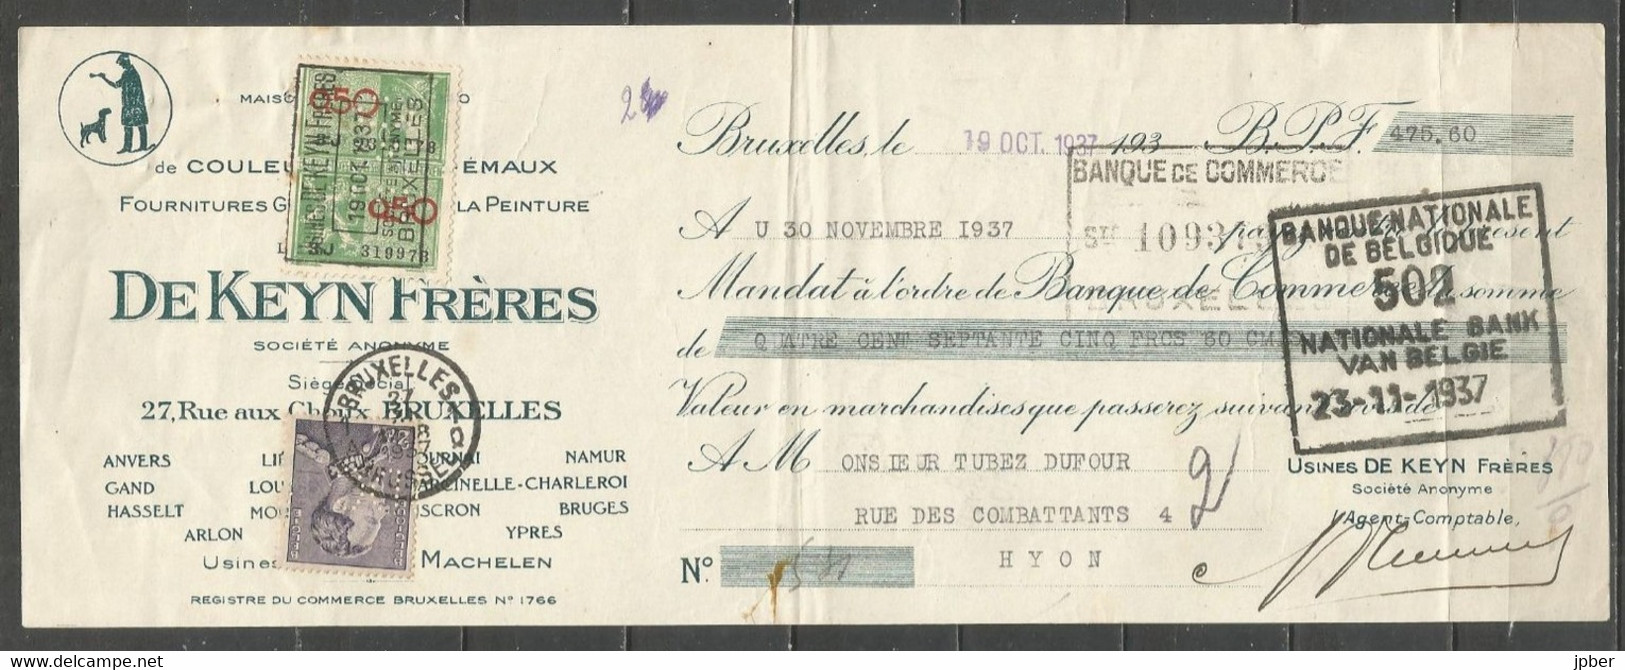 Belgique - Léopold III Poortman N°431c Perforé DC Et Timbre Fiscal Perforé DKL Sur Billet à Ordre Du 19-10-37 - 1936-51 Poortman